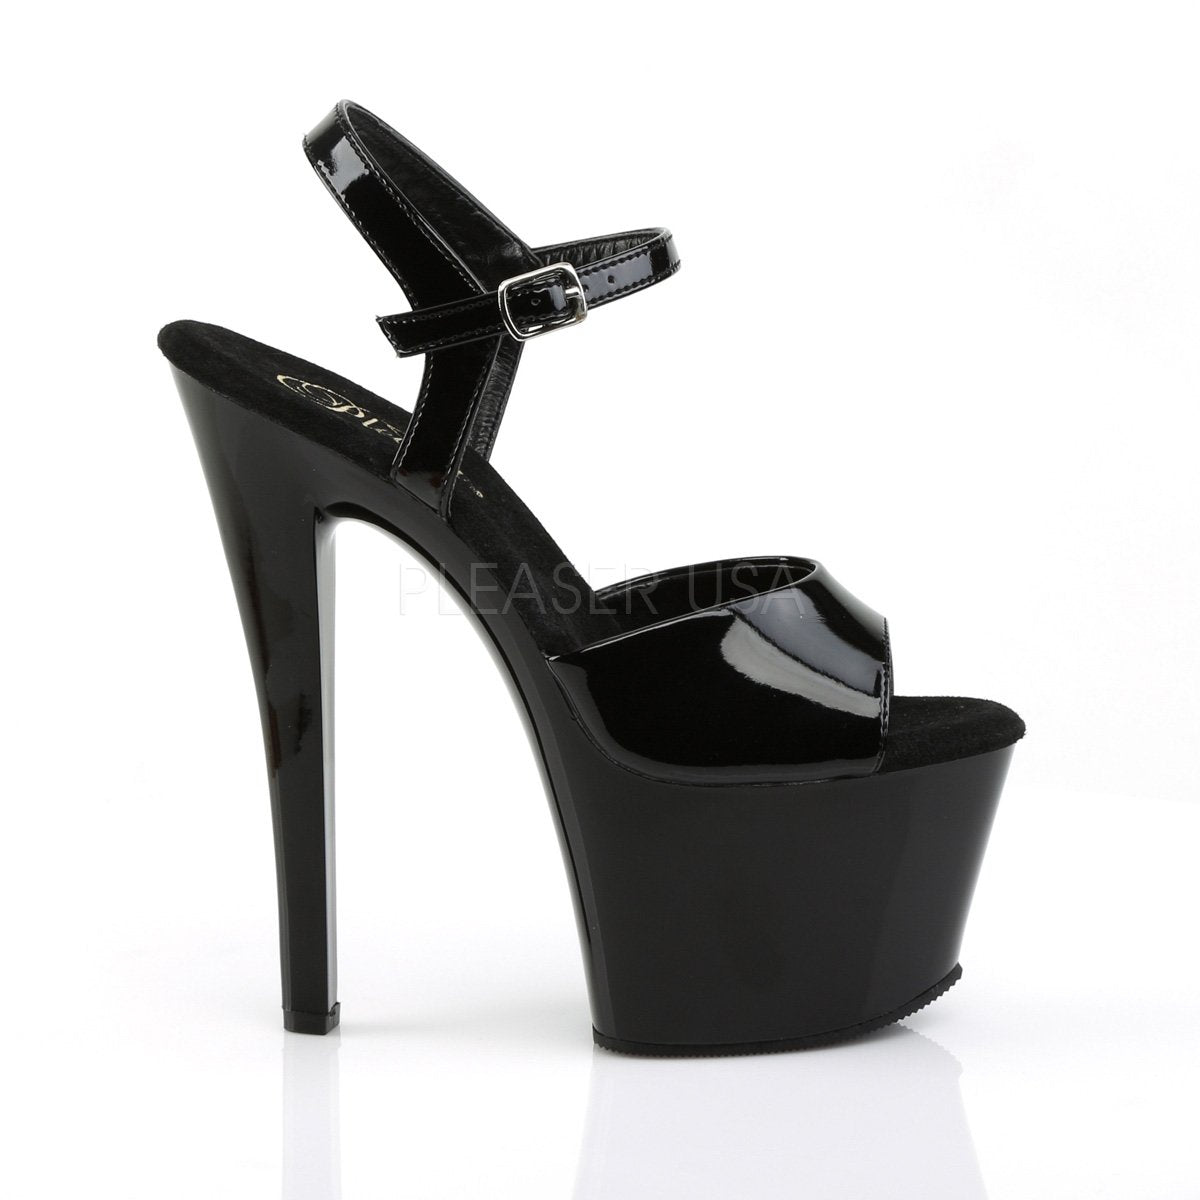 Extremely High Heeled Fetish Platform Shoes Stock Image - Image of  dominatrix, isolated: 23148575